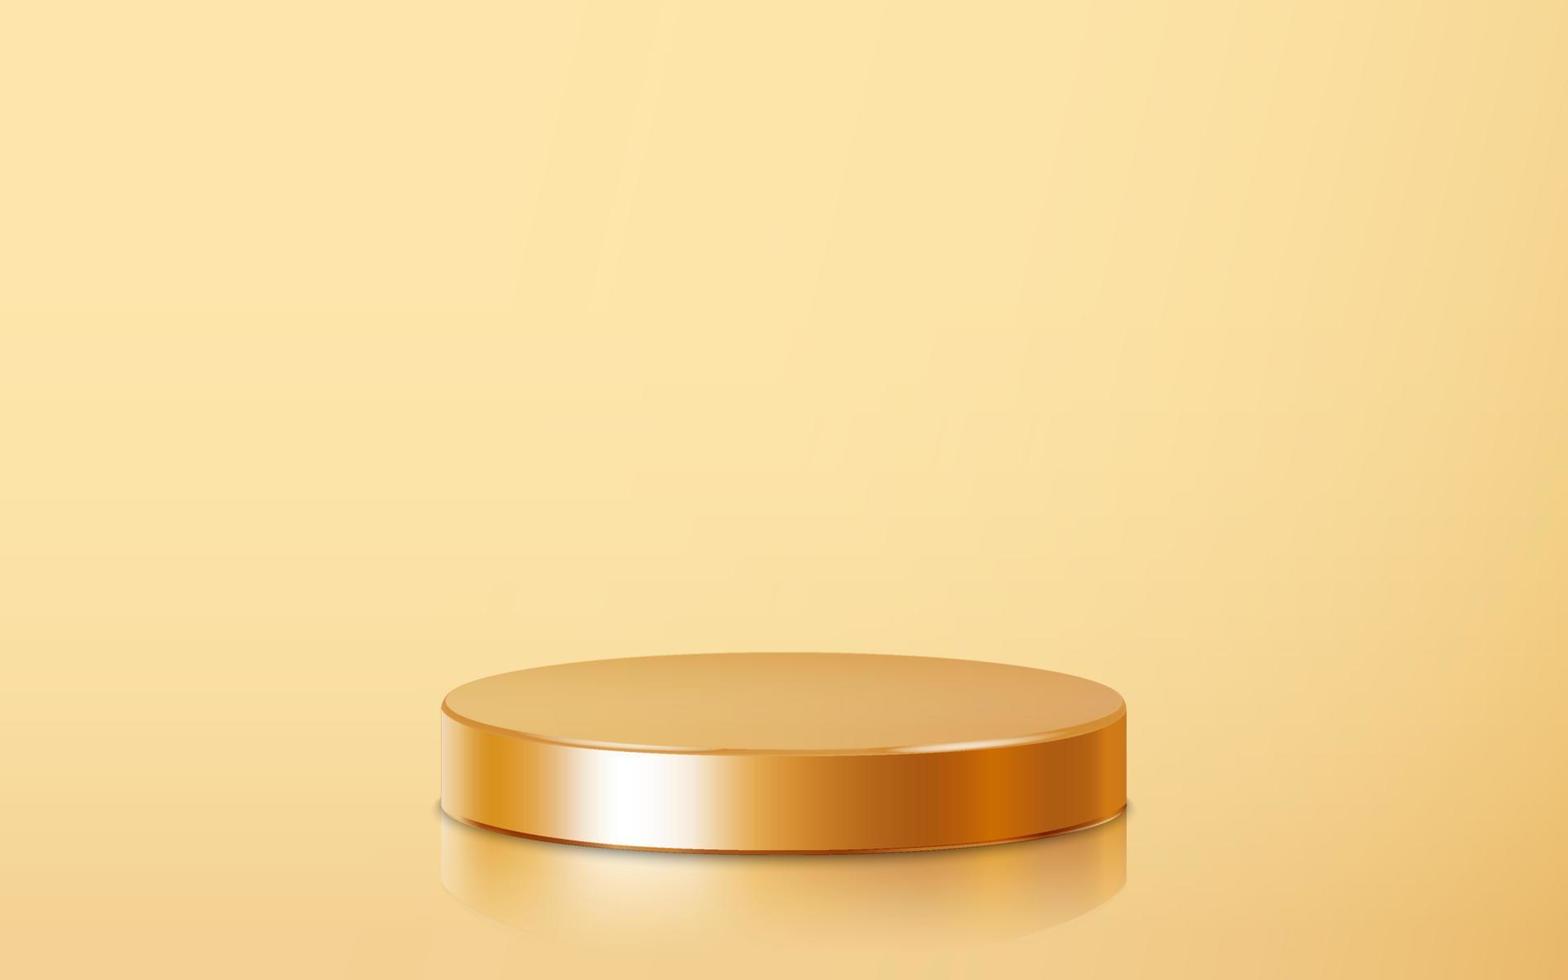 realistische goldene leere produktpodiumszene lokalisiert auf goldenem hintergrund. geometrische metallische runde form für das produktbranding. Goldzylinder-Mock-up-Szene. 3D-Vektor-Illustration-Hintergrund vektor